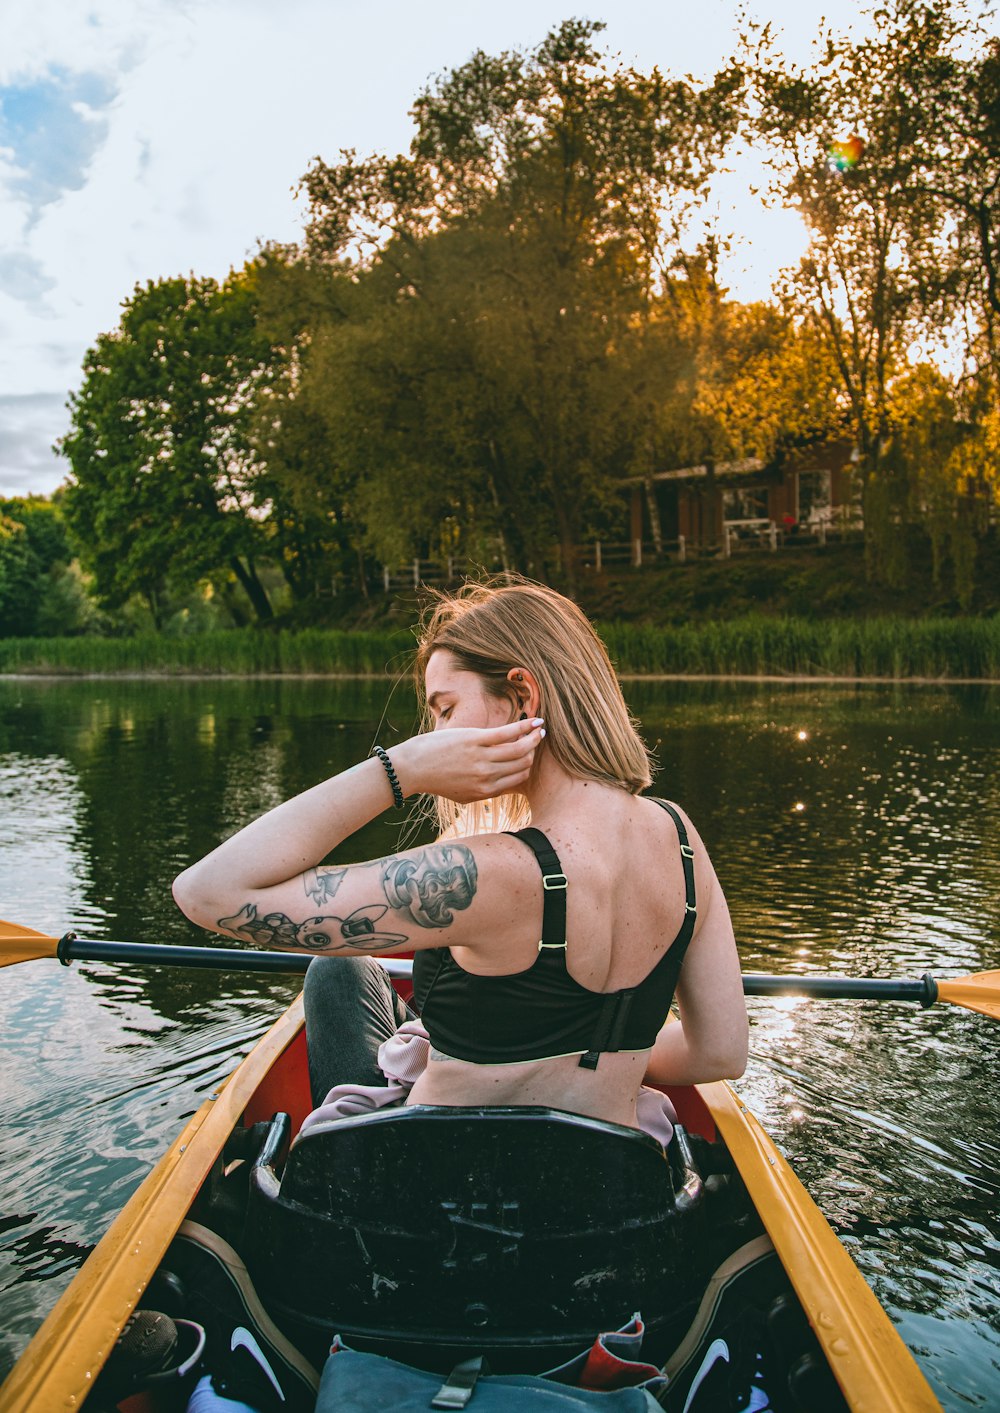 a woman in a bikini paddling a canoe on a lake